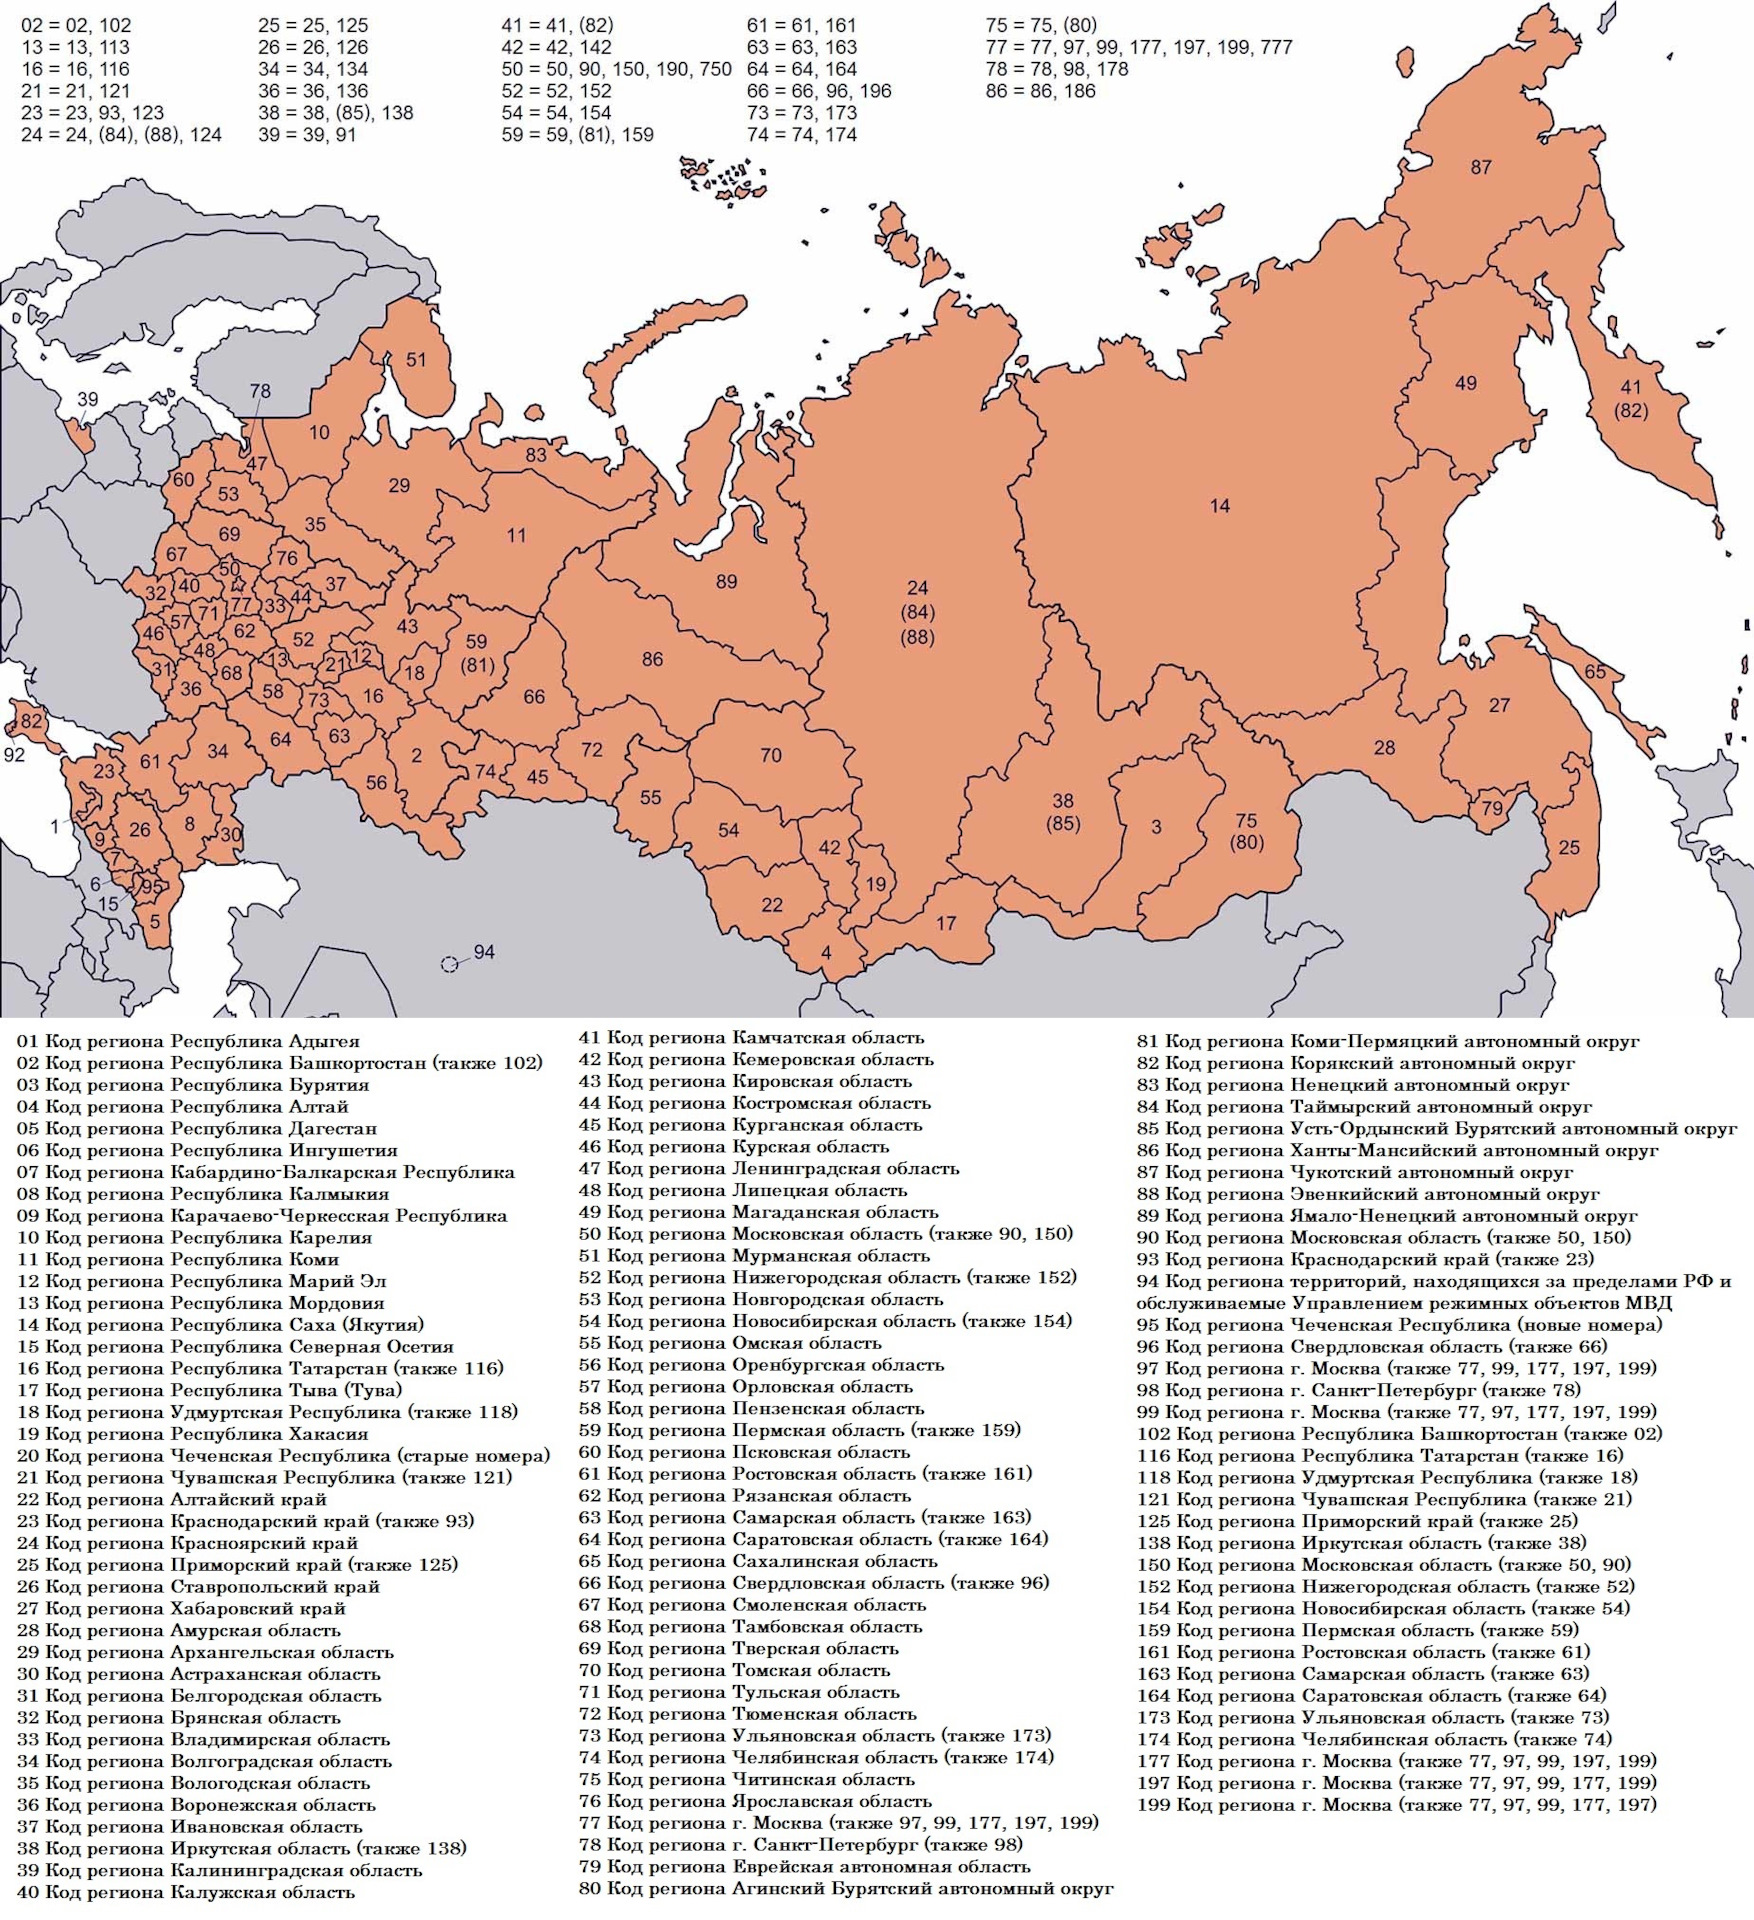 Код региона чечня. Коды регионов на автомобильных. Kodi regionov. Карта автомобильных регионов России. Автомобильные коды регионов России таблица.